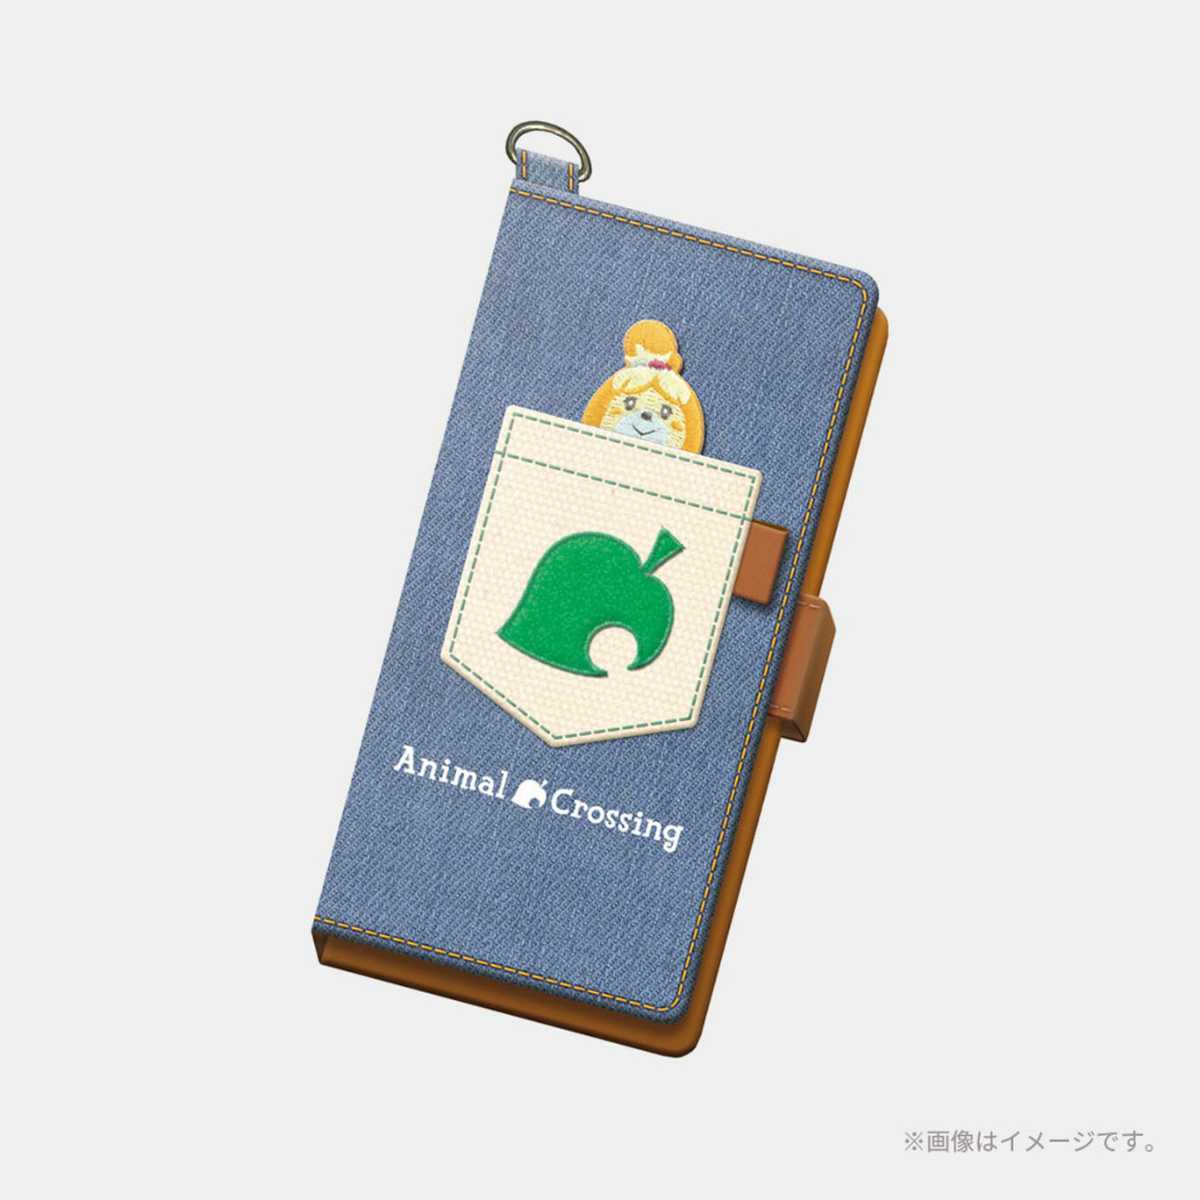 【新品未開封】マイ ニンテンドー どうぶつの森 ポケット キャンプ マルチ スマートフォン iPhone Smart Phone Animal Crossing